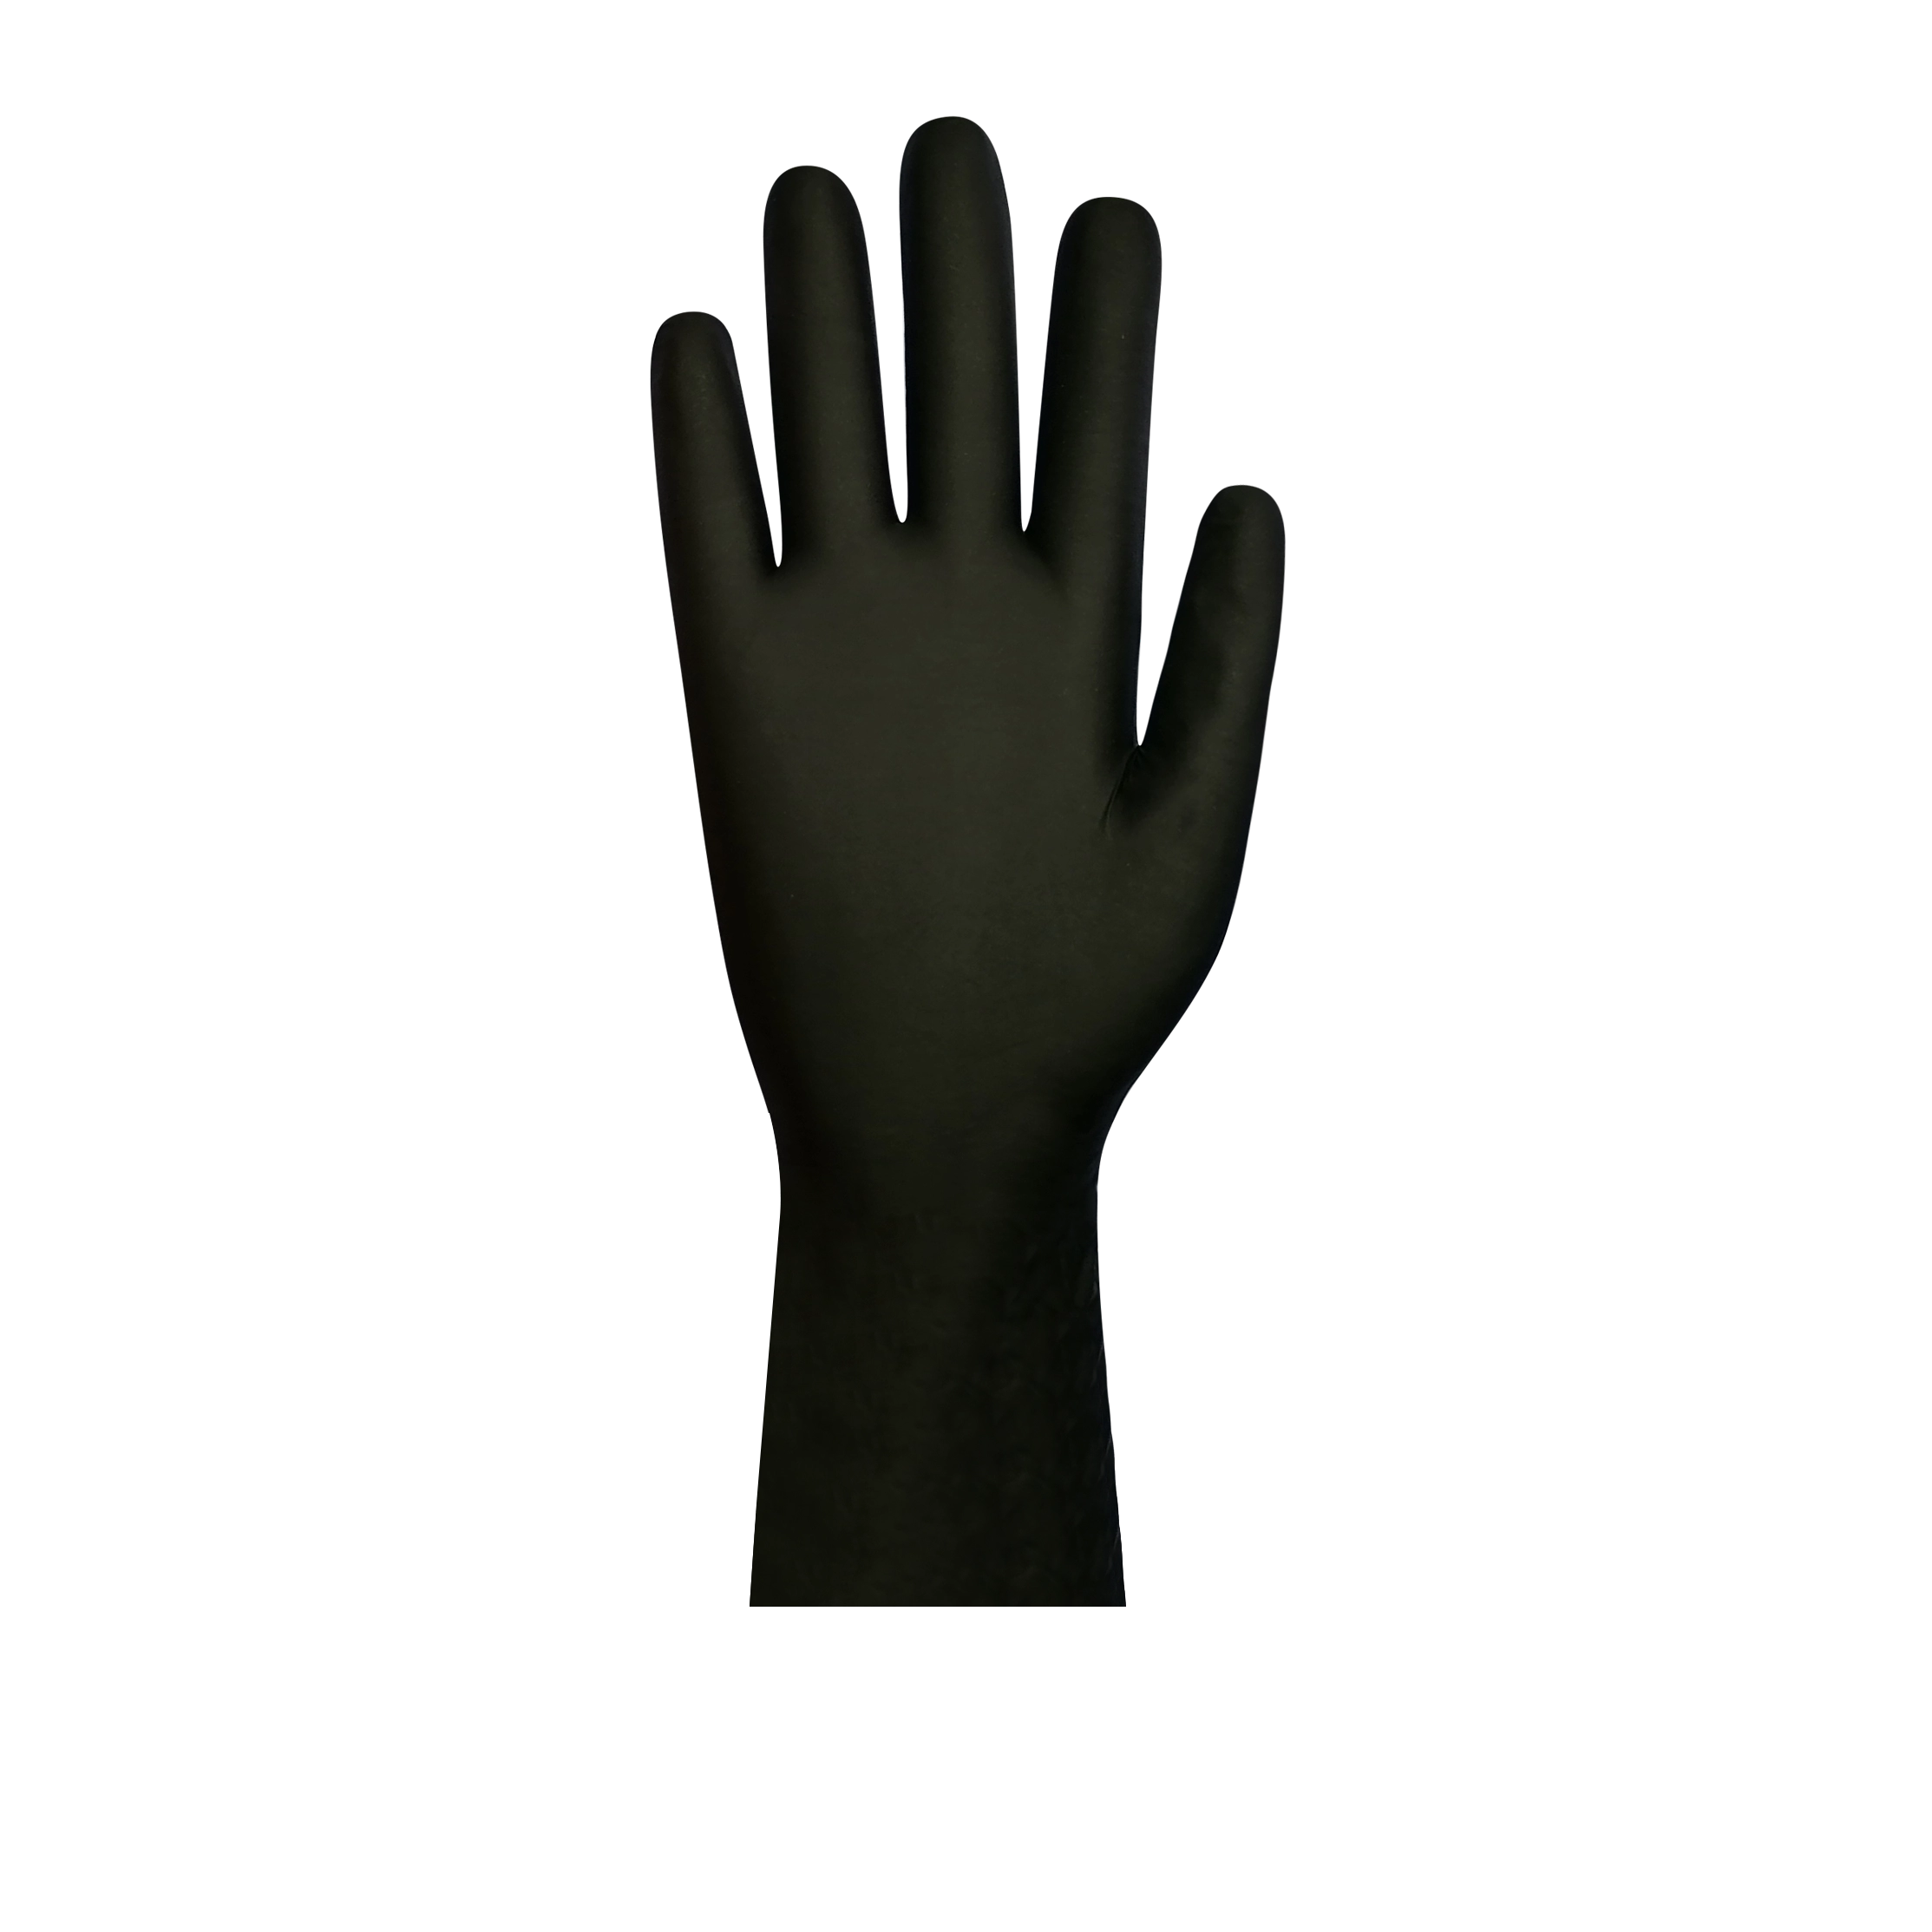 Μαύρα ιατρικά γάντια νιτριλίου μιας χρήσης